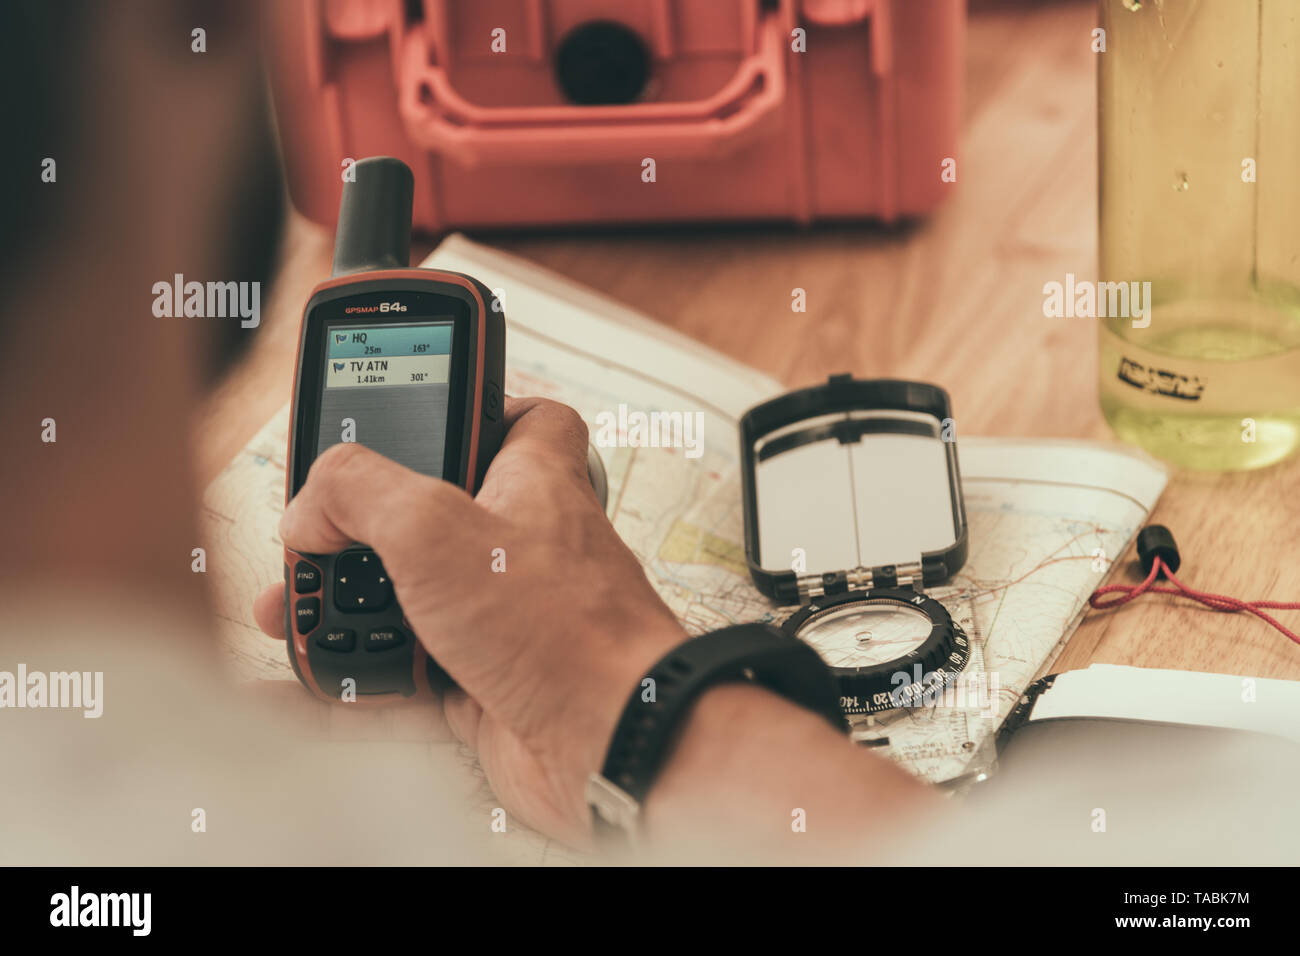 Männliche Hände vorbereiten GPS, Kompass und Karten für ein Klettern Expedition. Stockfoto